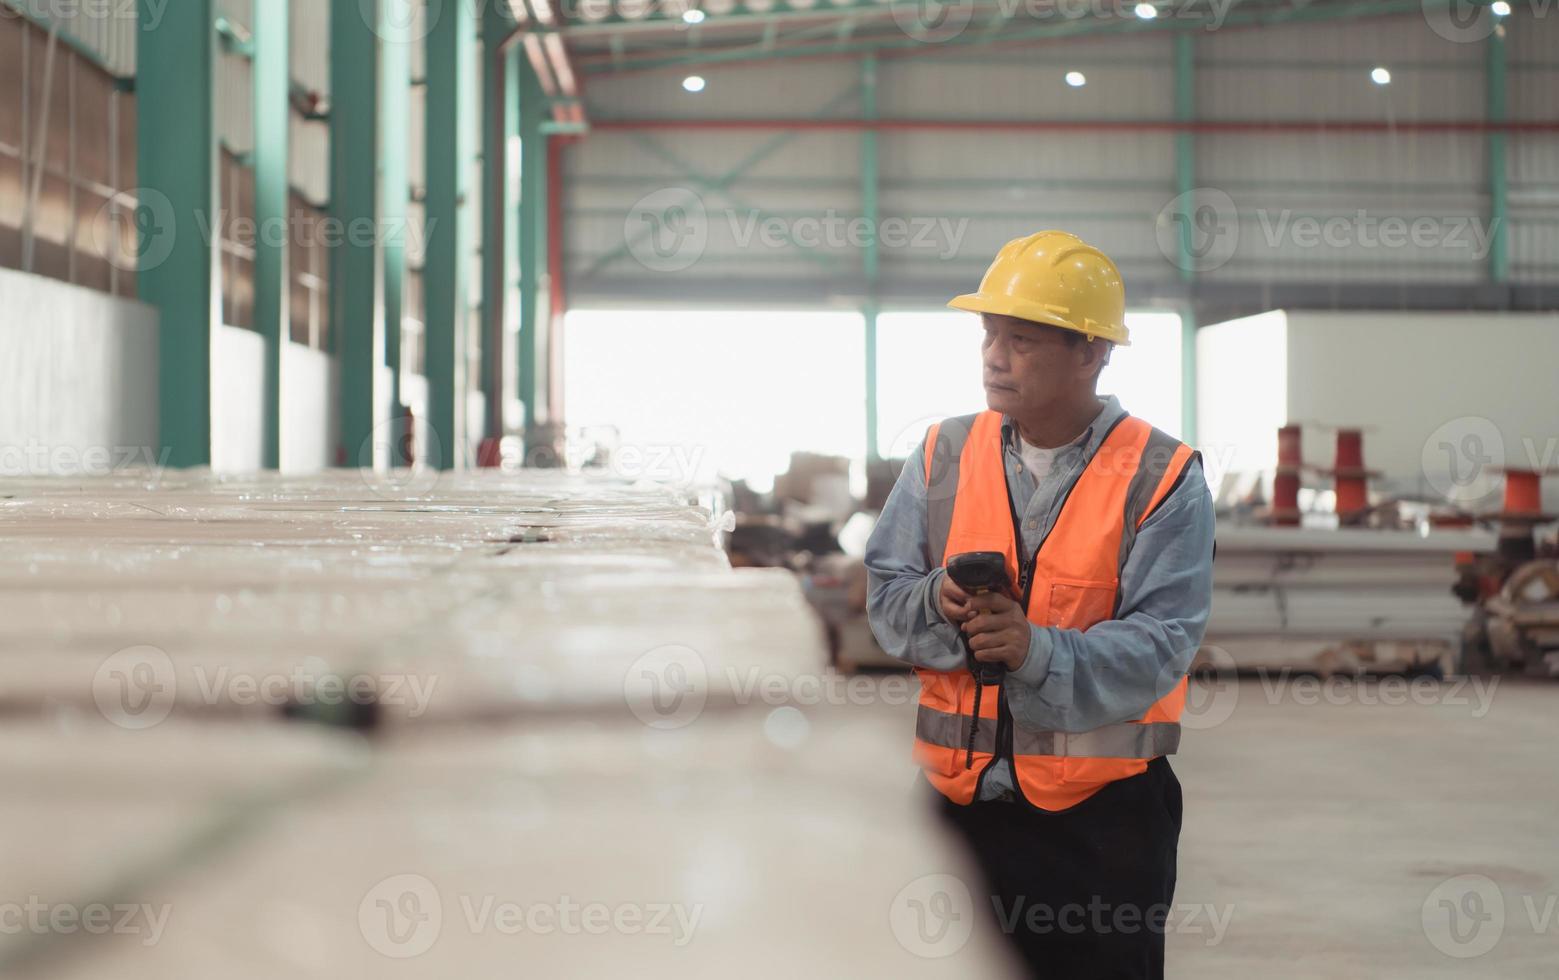 arbeiders inspecteren de nieuw pakhuizen producten. gebruik streepjescode scanners naar controleren de producten dat zullen worden gebruikt in de magazijn plank structuur. foto